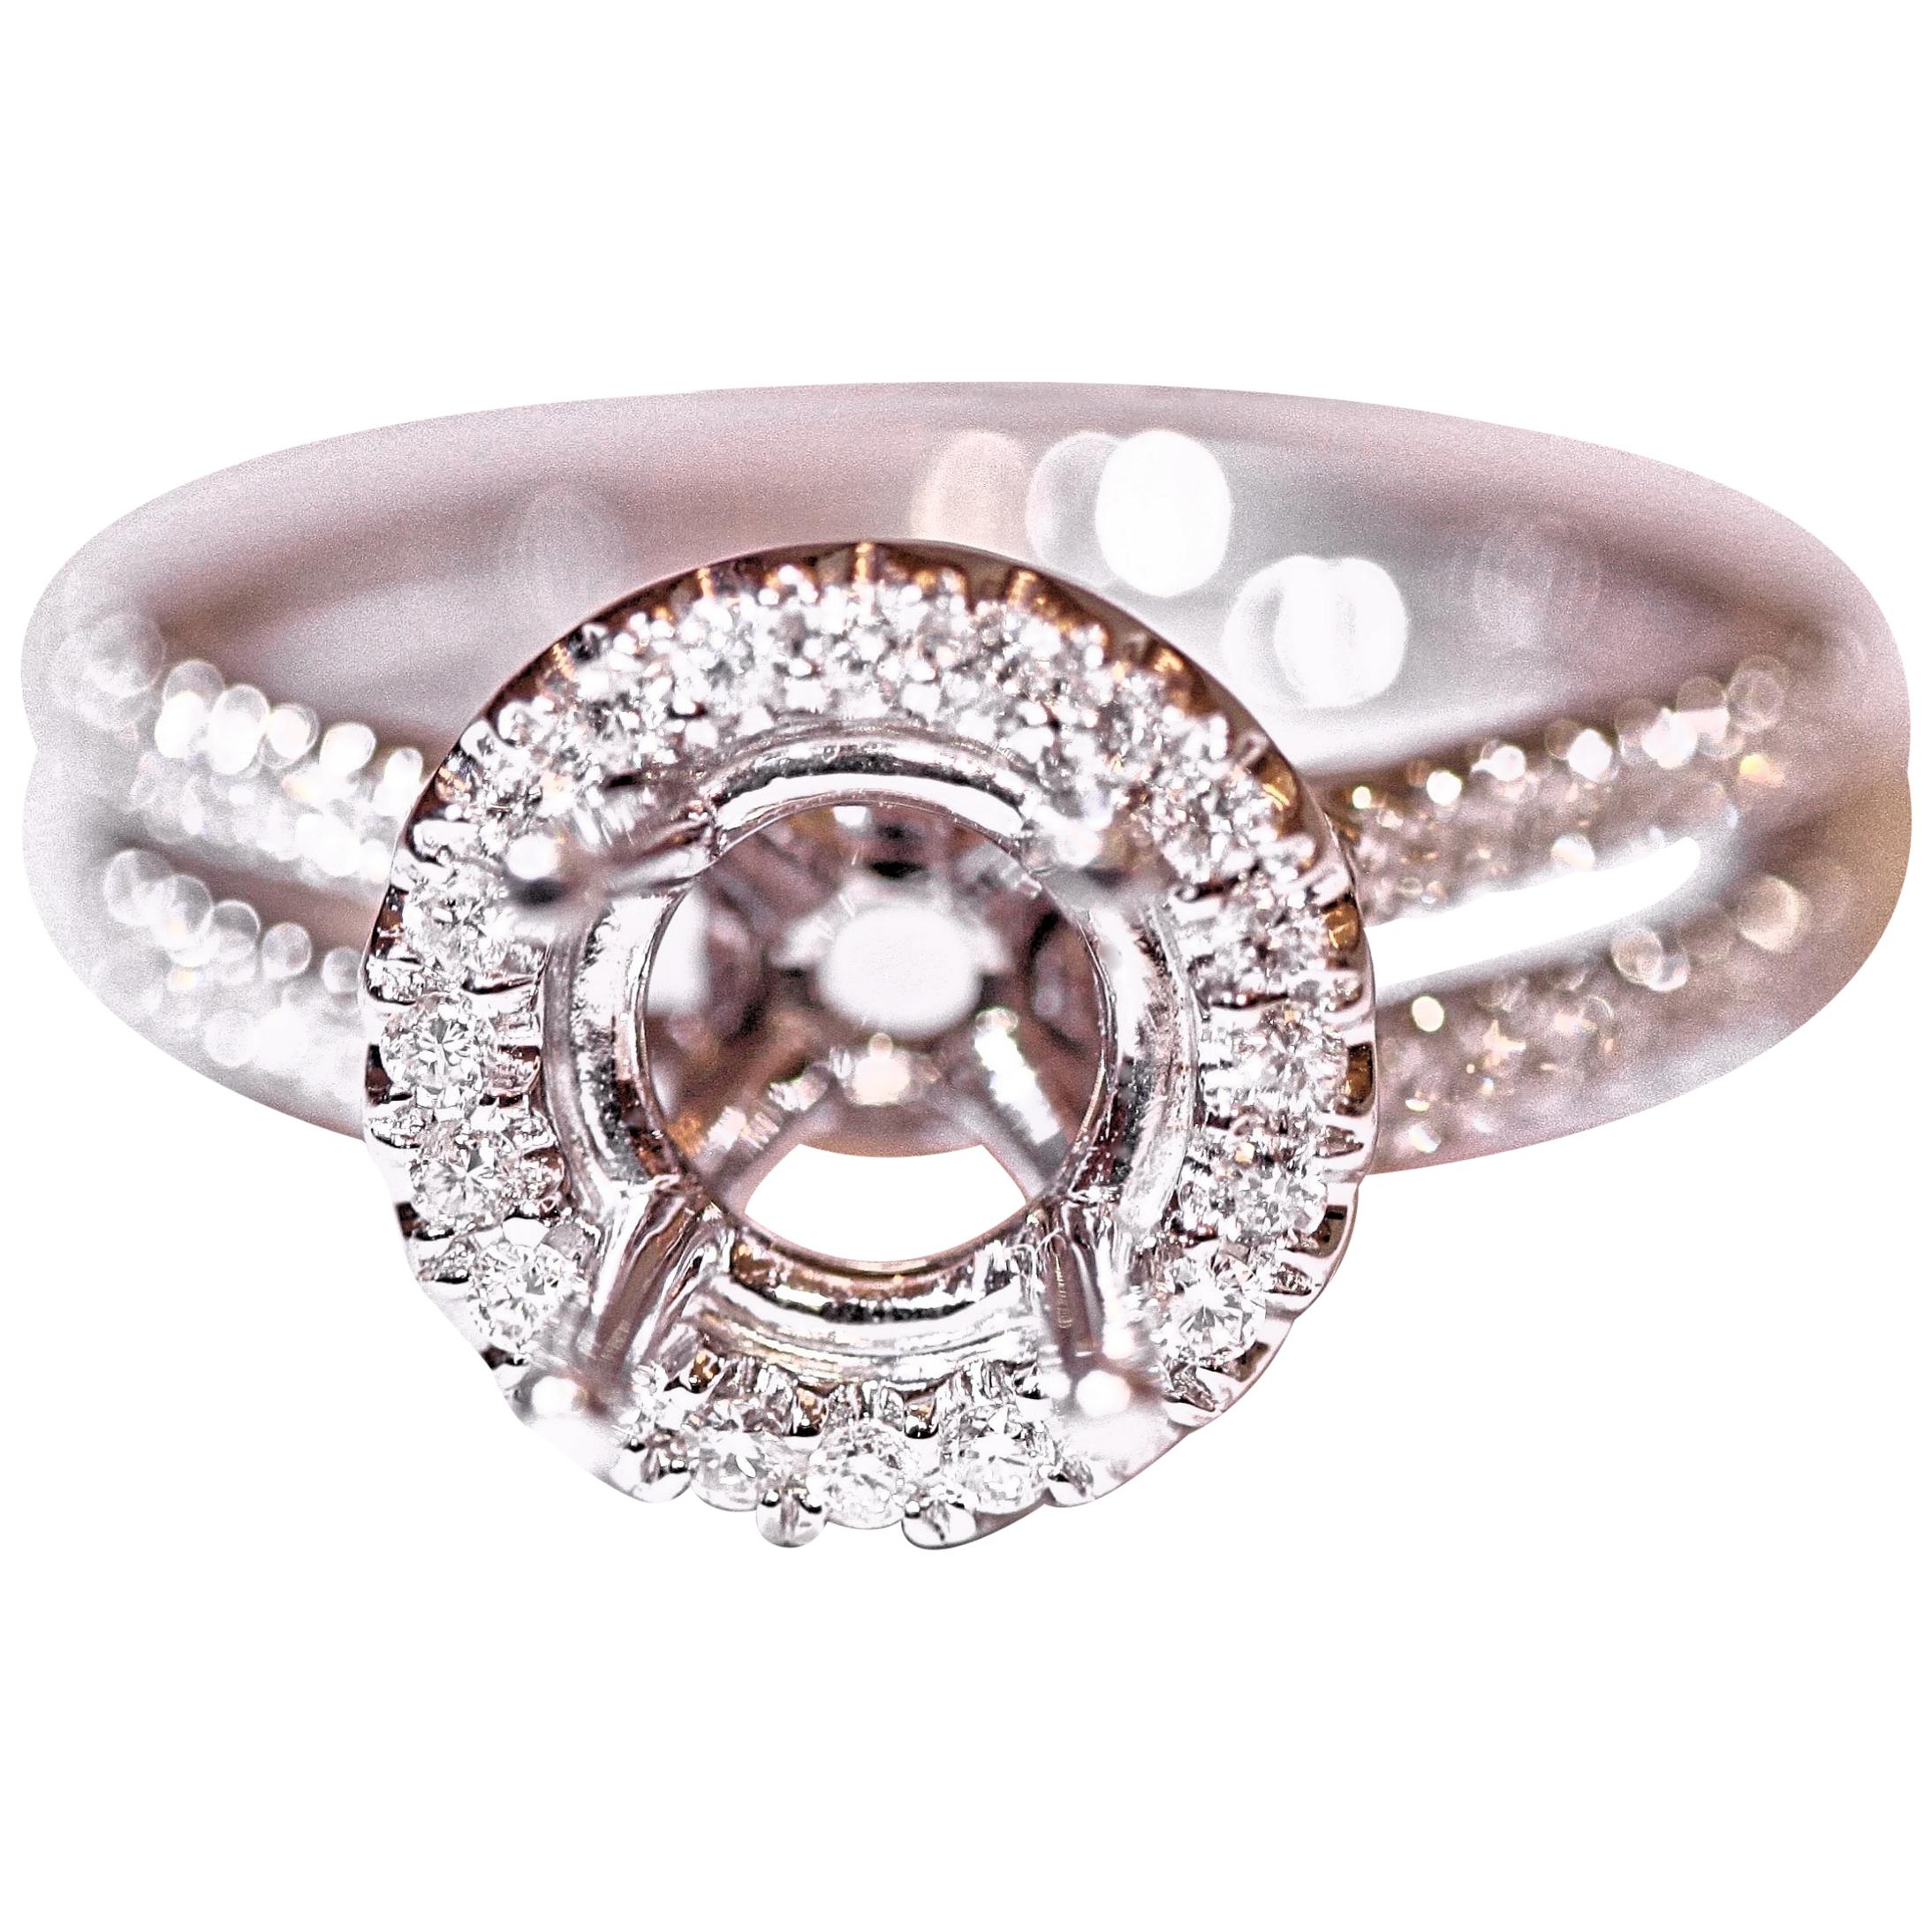 Diamond Engagement Fashion Ring 18 Karat White Gold .58 Carat Total Weight For Sale